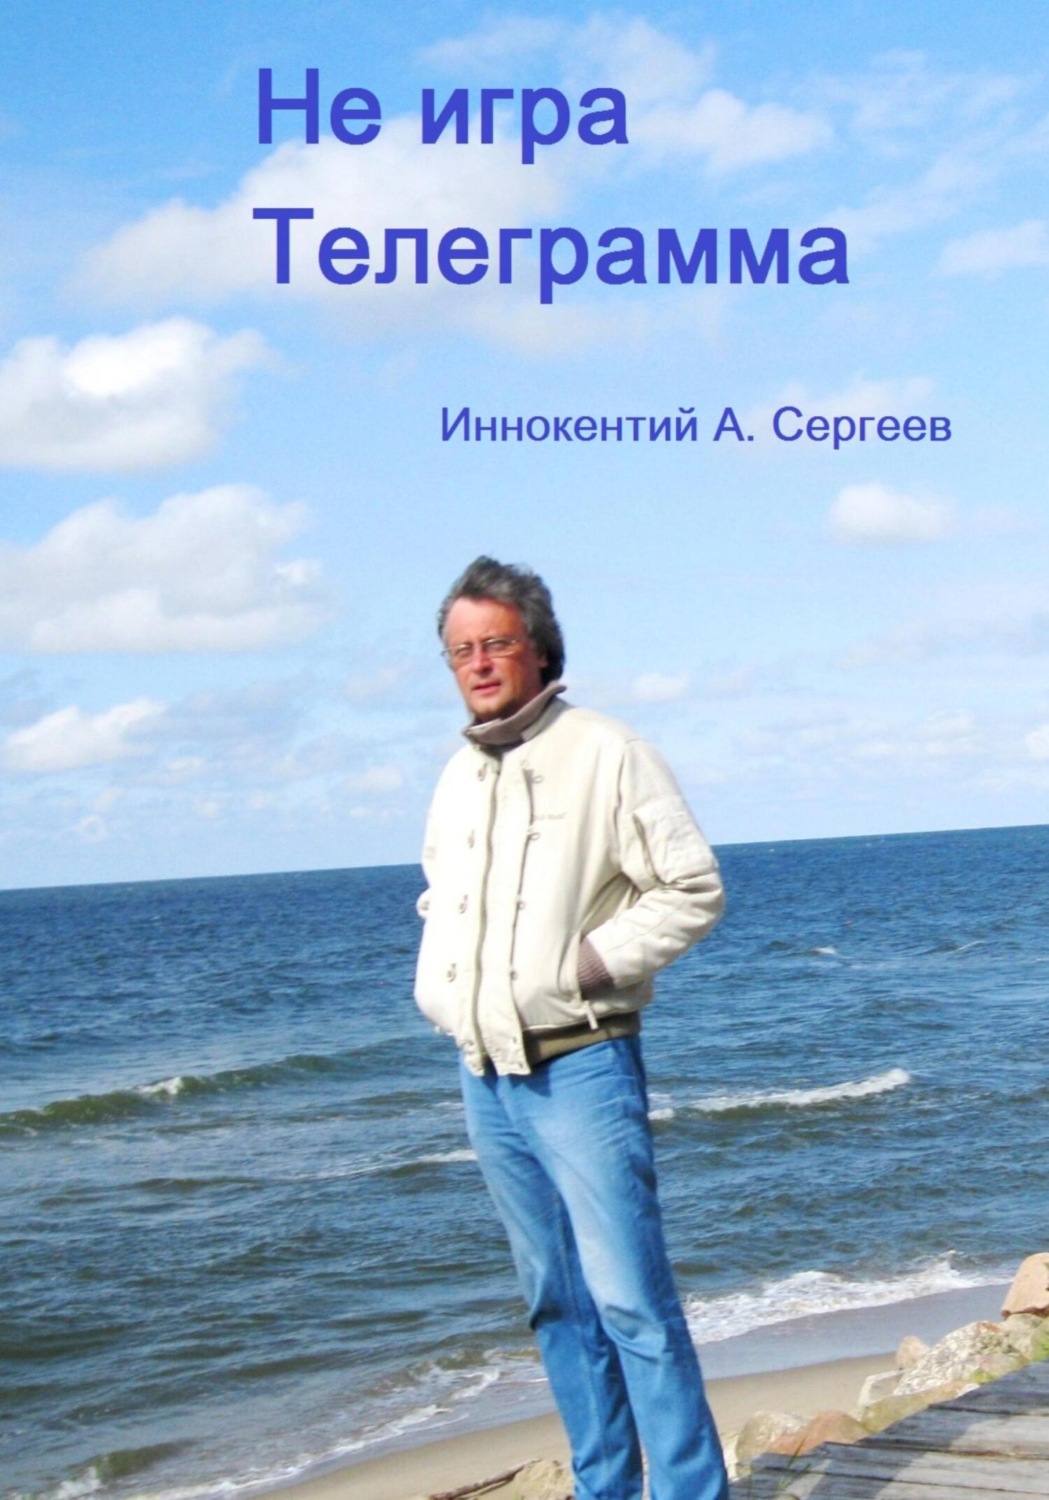 Книги в телеграмме на русском языке скачать фото 18